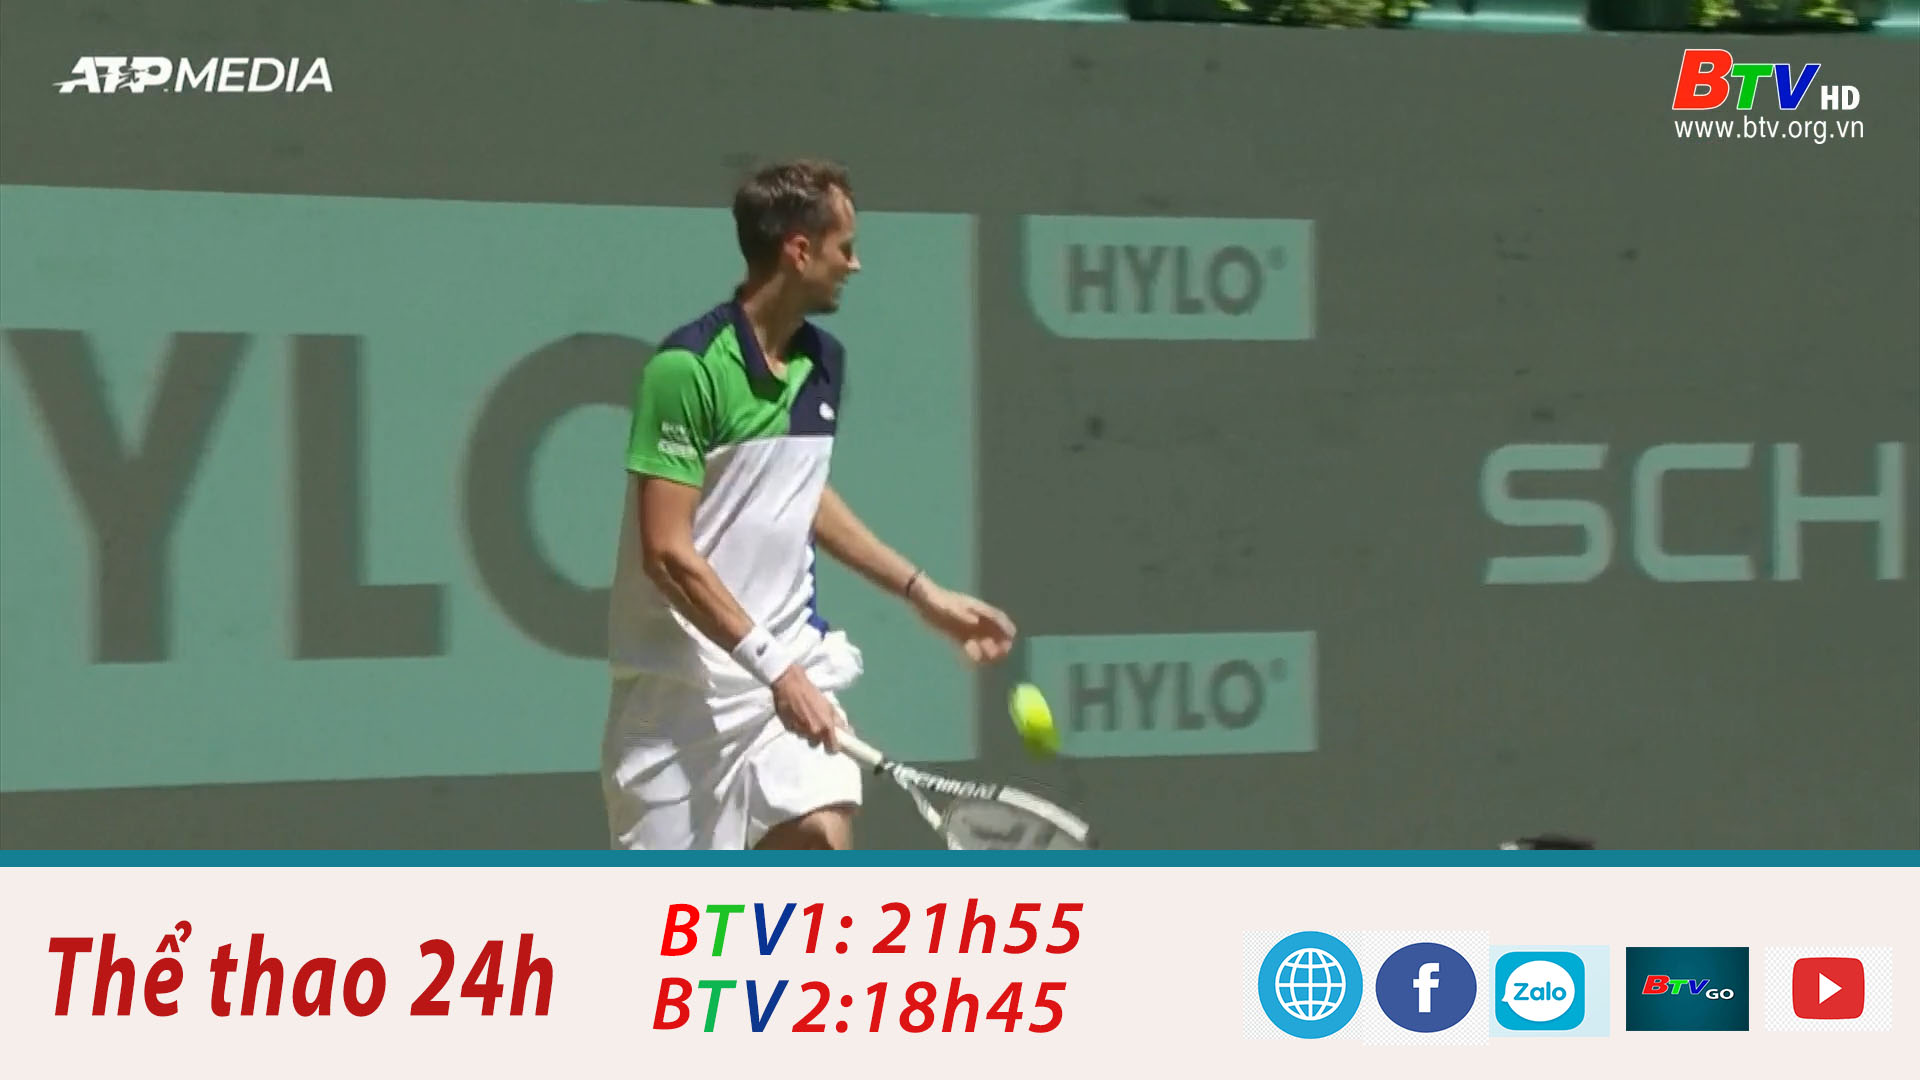 Daniil Medvedev vào vòng 2 Giải quần vợt Halle mở rộng